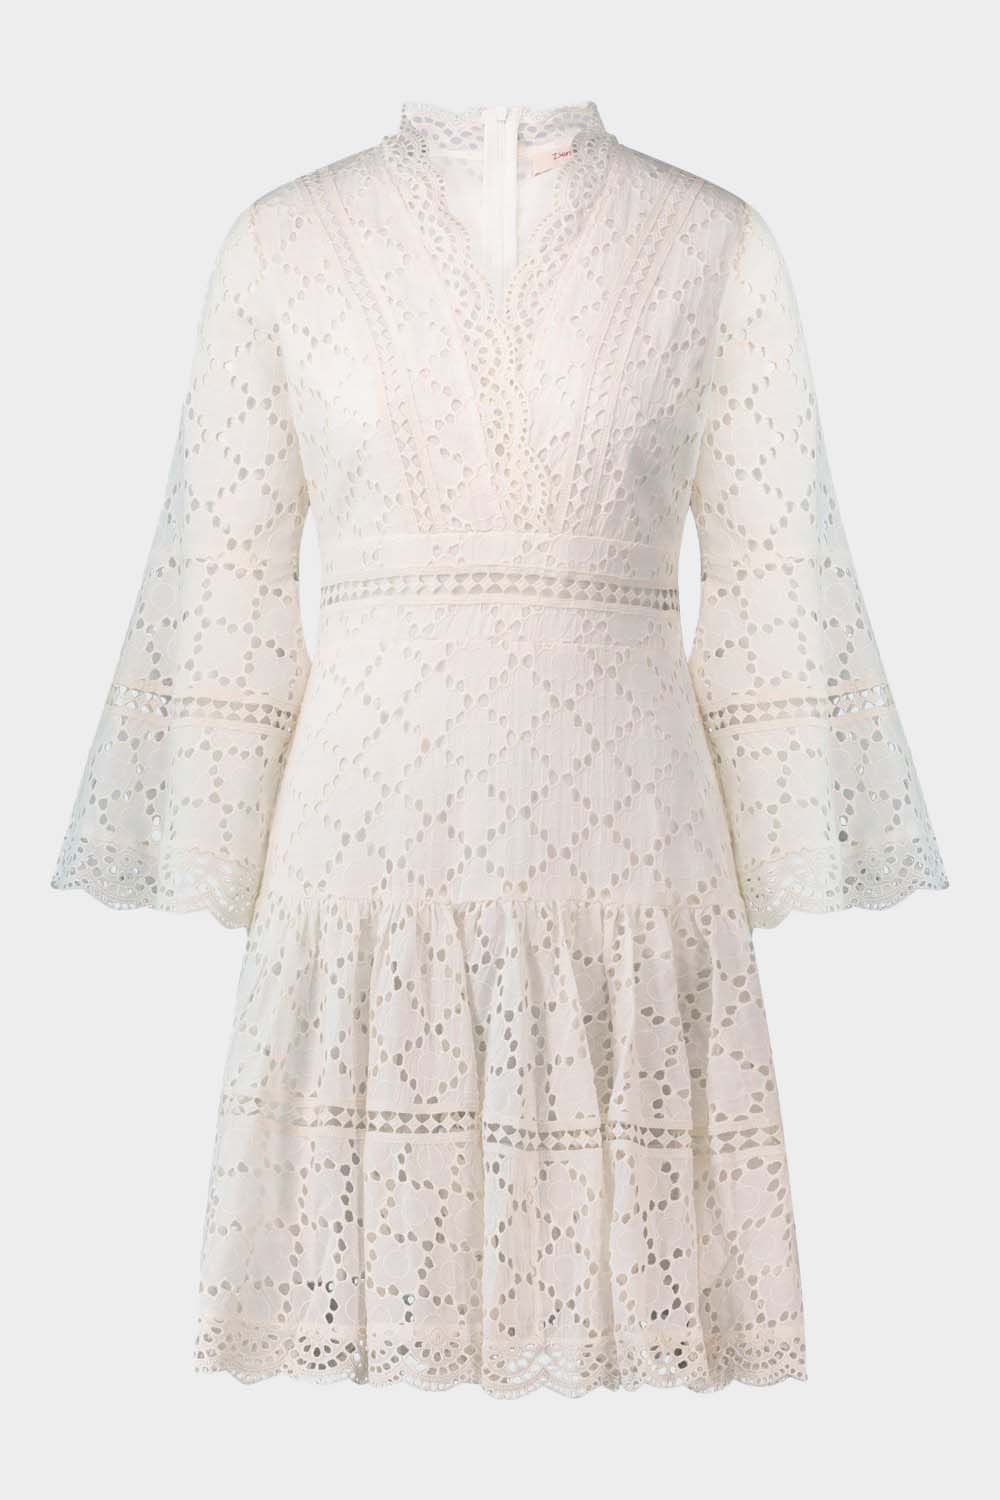 שמלת ABLYA לנשים עיטורי תחרה RENE DERHY Vendome online | ונדום .